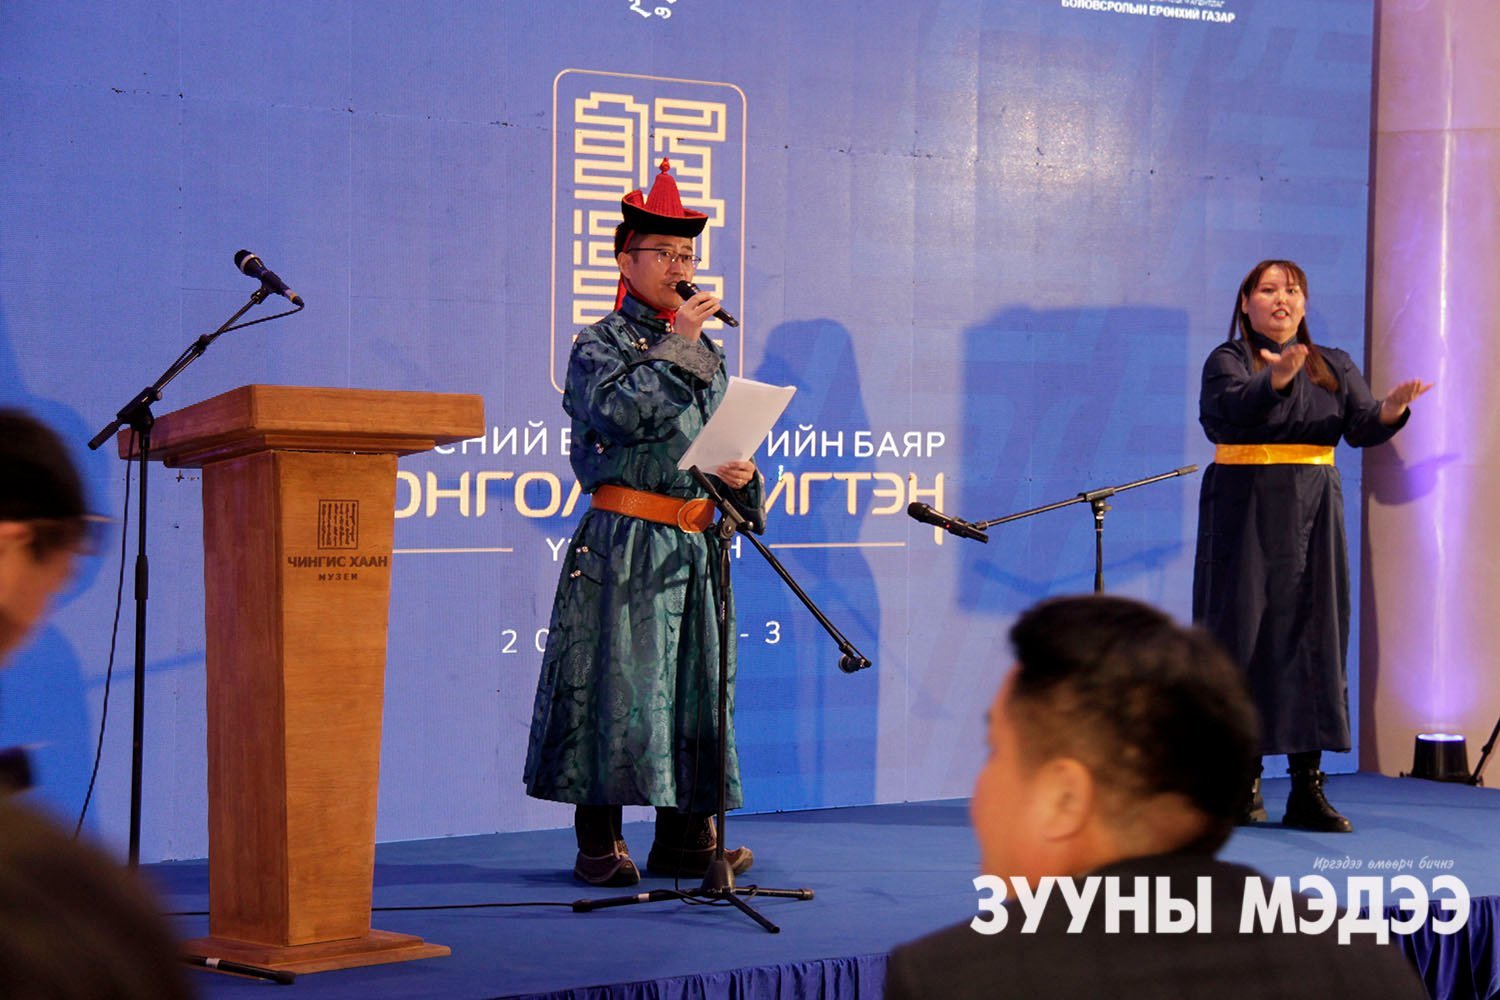 Фото: Үндэсний бичиг үсгийн баяр Монгол бичигтэн үзэсгэлэн нээгдлээ